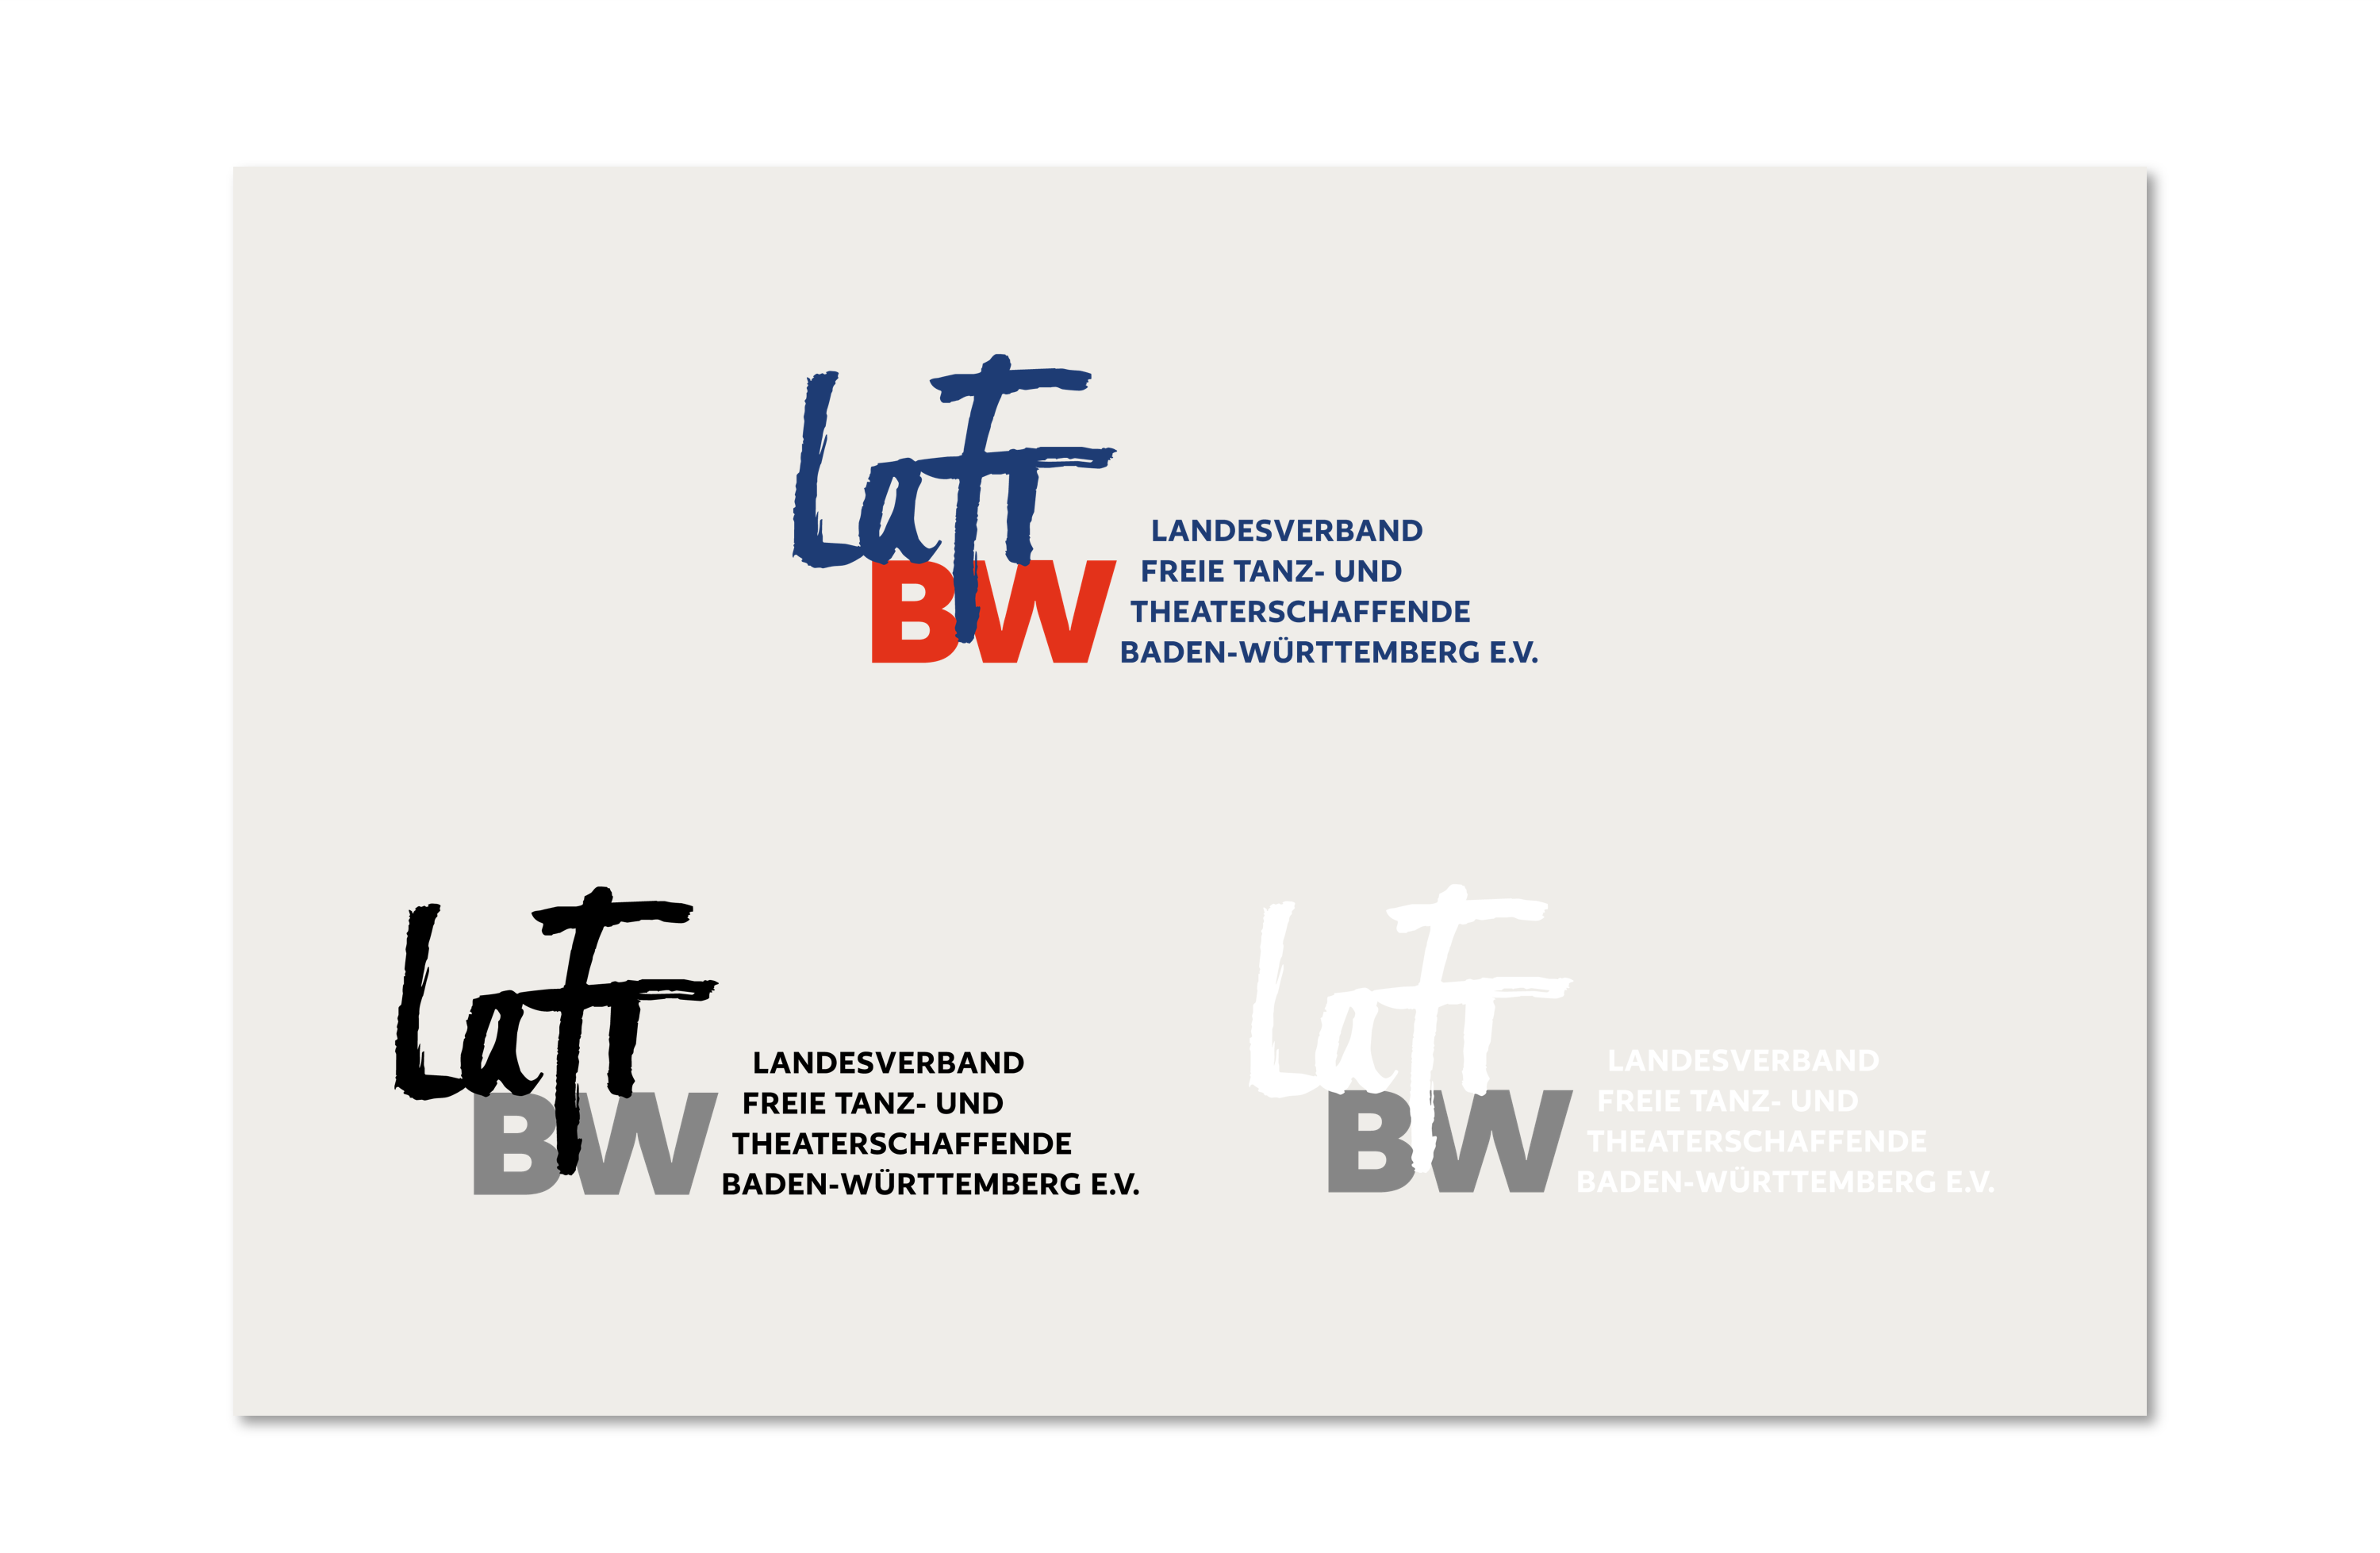 Auf hellgrauem Hintergrund ist das neue Logo das LaFT BW zu sehen. Es gibt drei Varianten: in Farbe (also Blau und Rot), Schwarz-Weiß und Negativ.